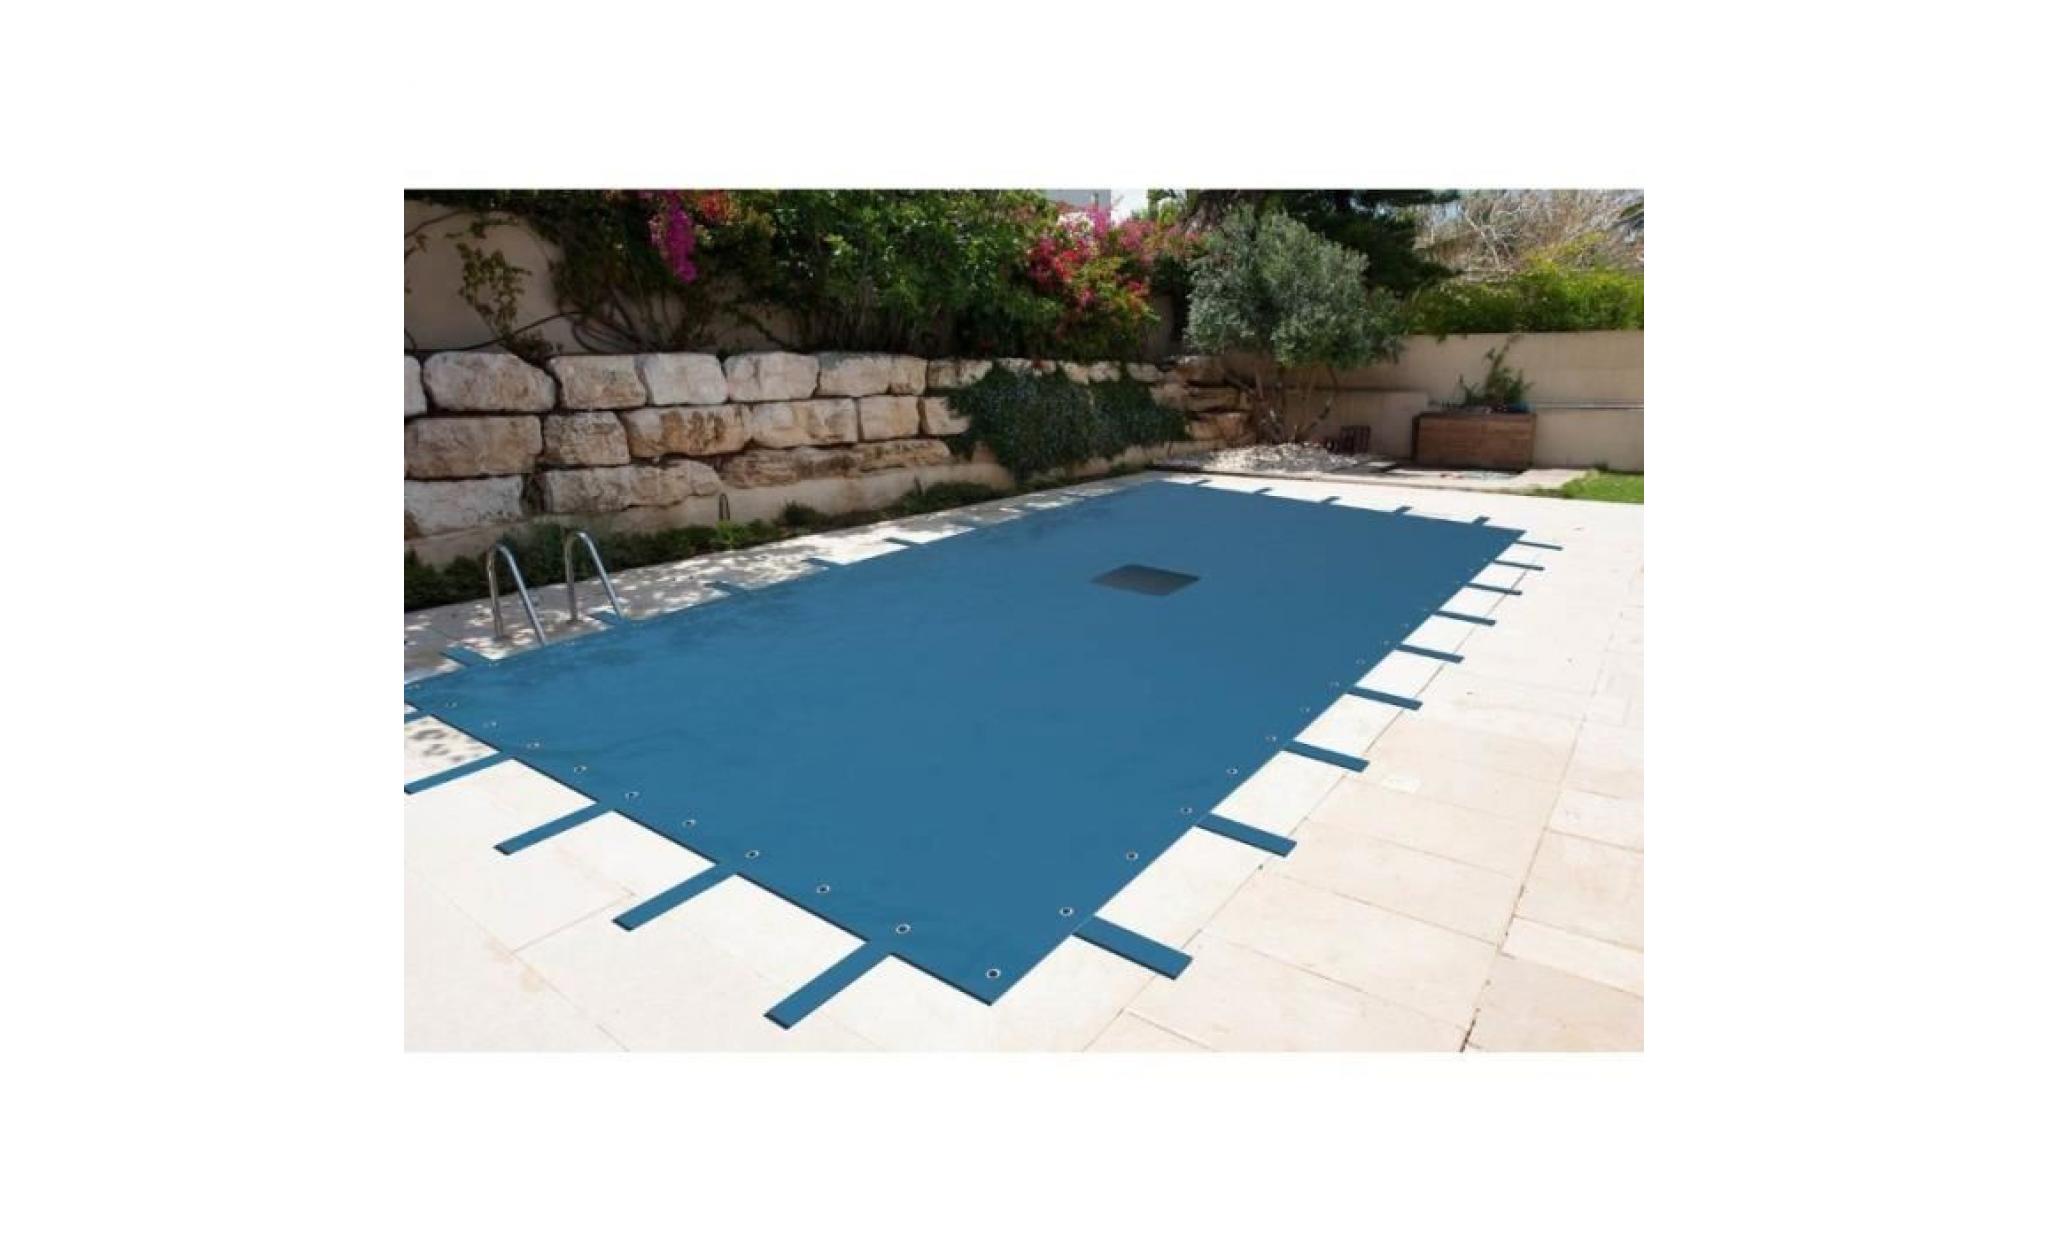 Bâche piscine rectangulaire 6 x 10 m avec filet d'écoulement centrale - couverture piscine - bache imperméable - baches piscine